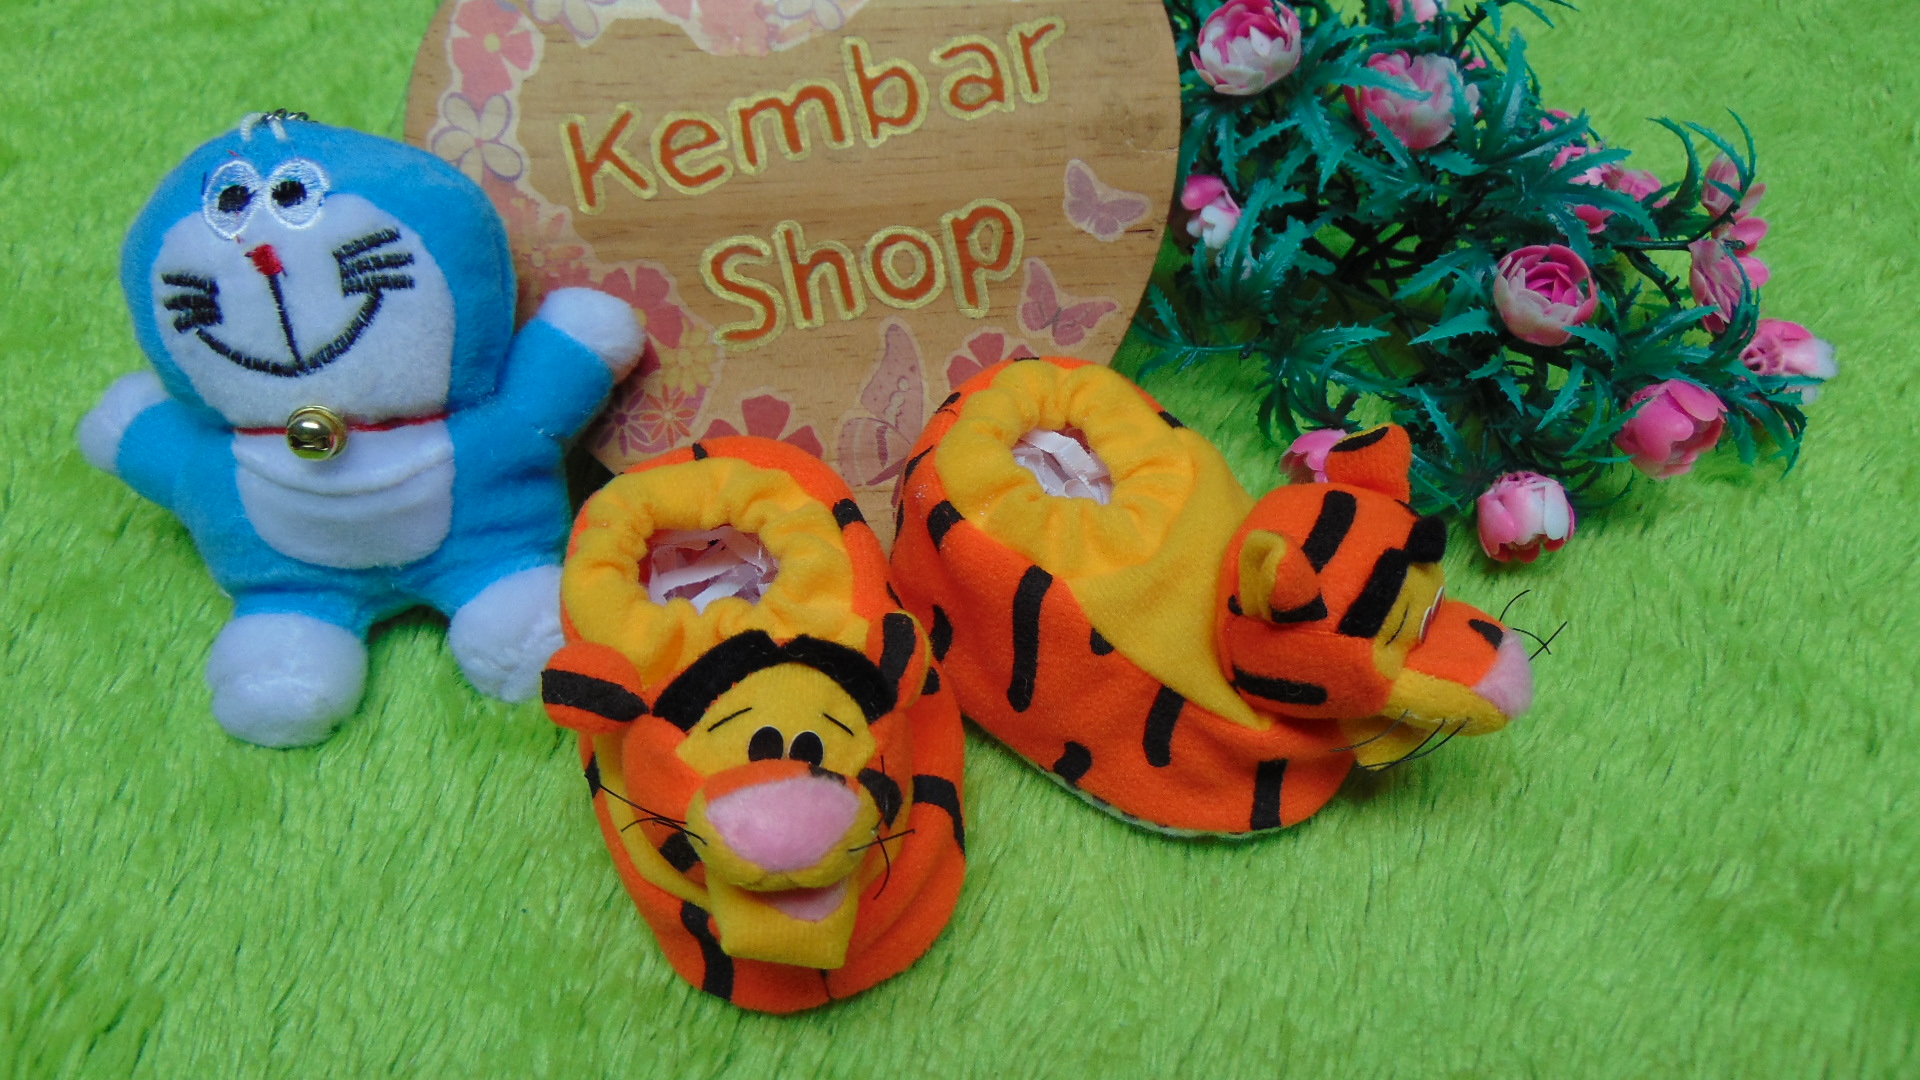 kado bayi baby gift set sepatu prewalker alas kaki newborn 0-6bulan lembut motif Tiger Harimau